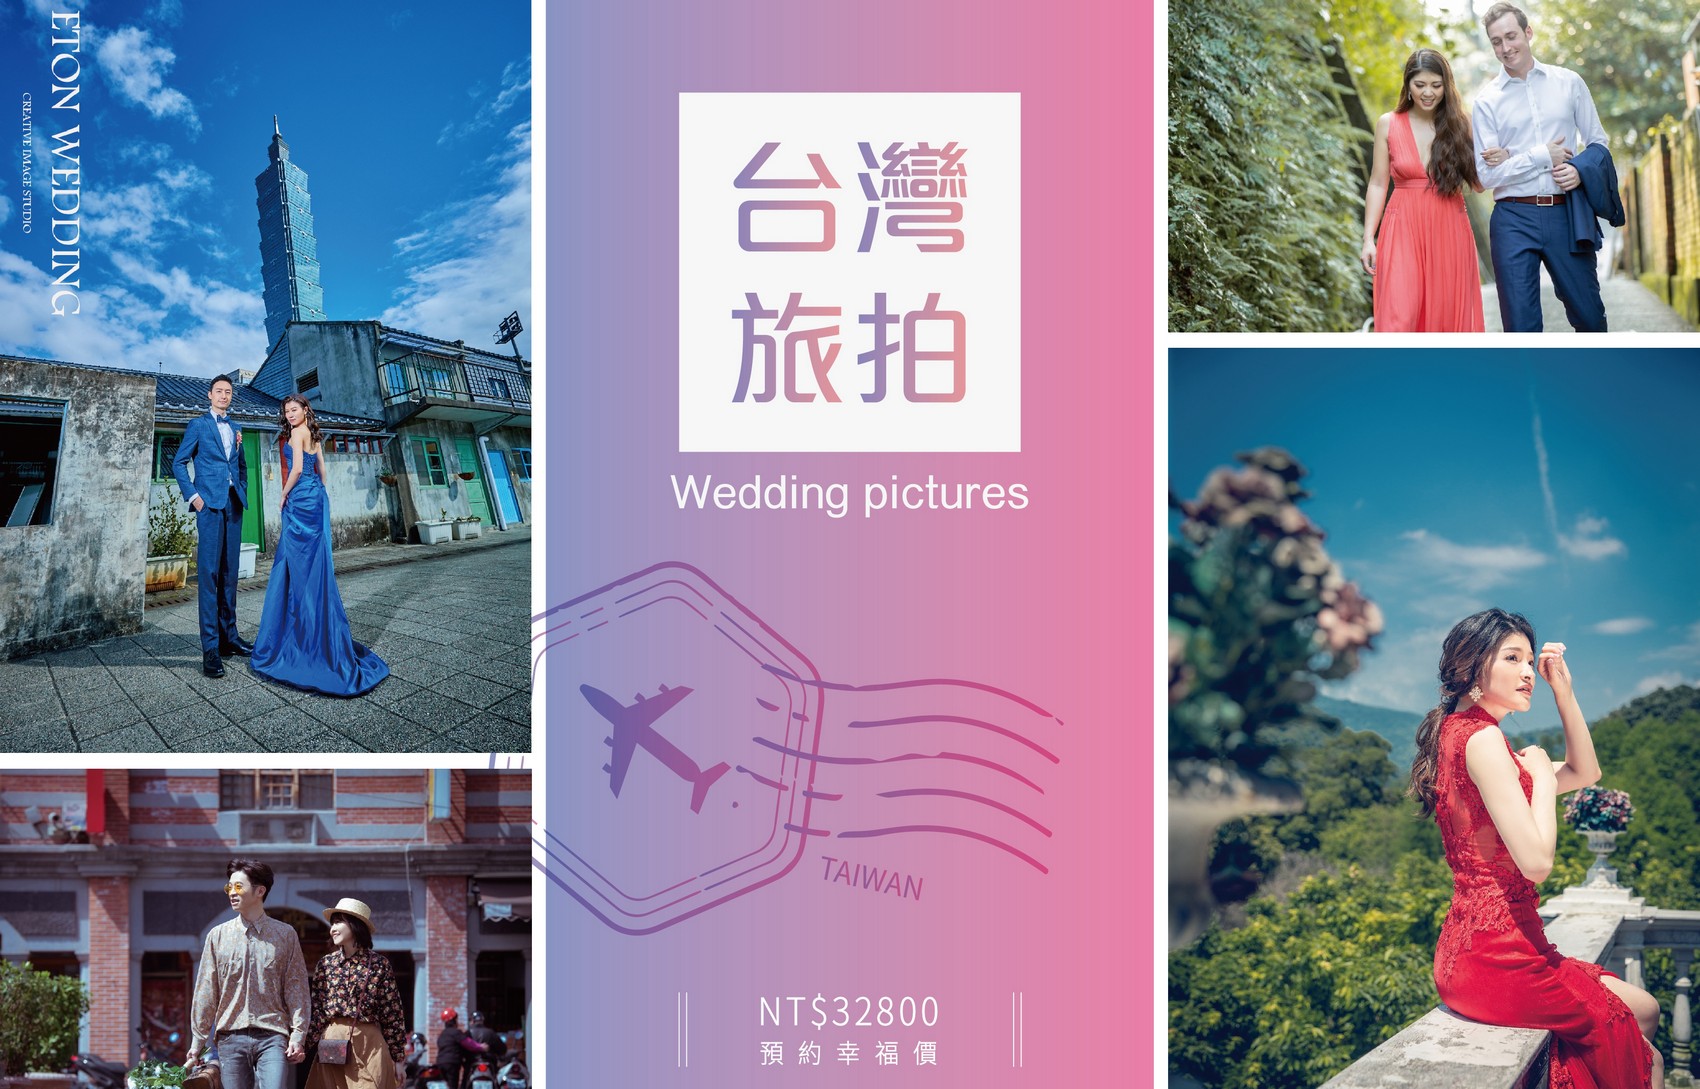 台灣 婚紗工作室,台灣 婚紗攝影價格,士林拍婚紗,士林 婚紗攝影,士林 婚紗工作室